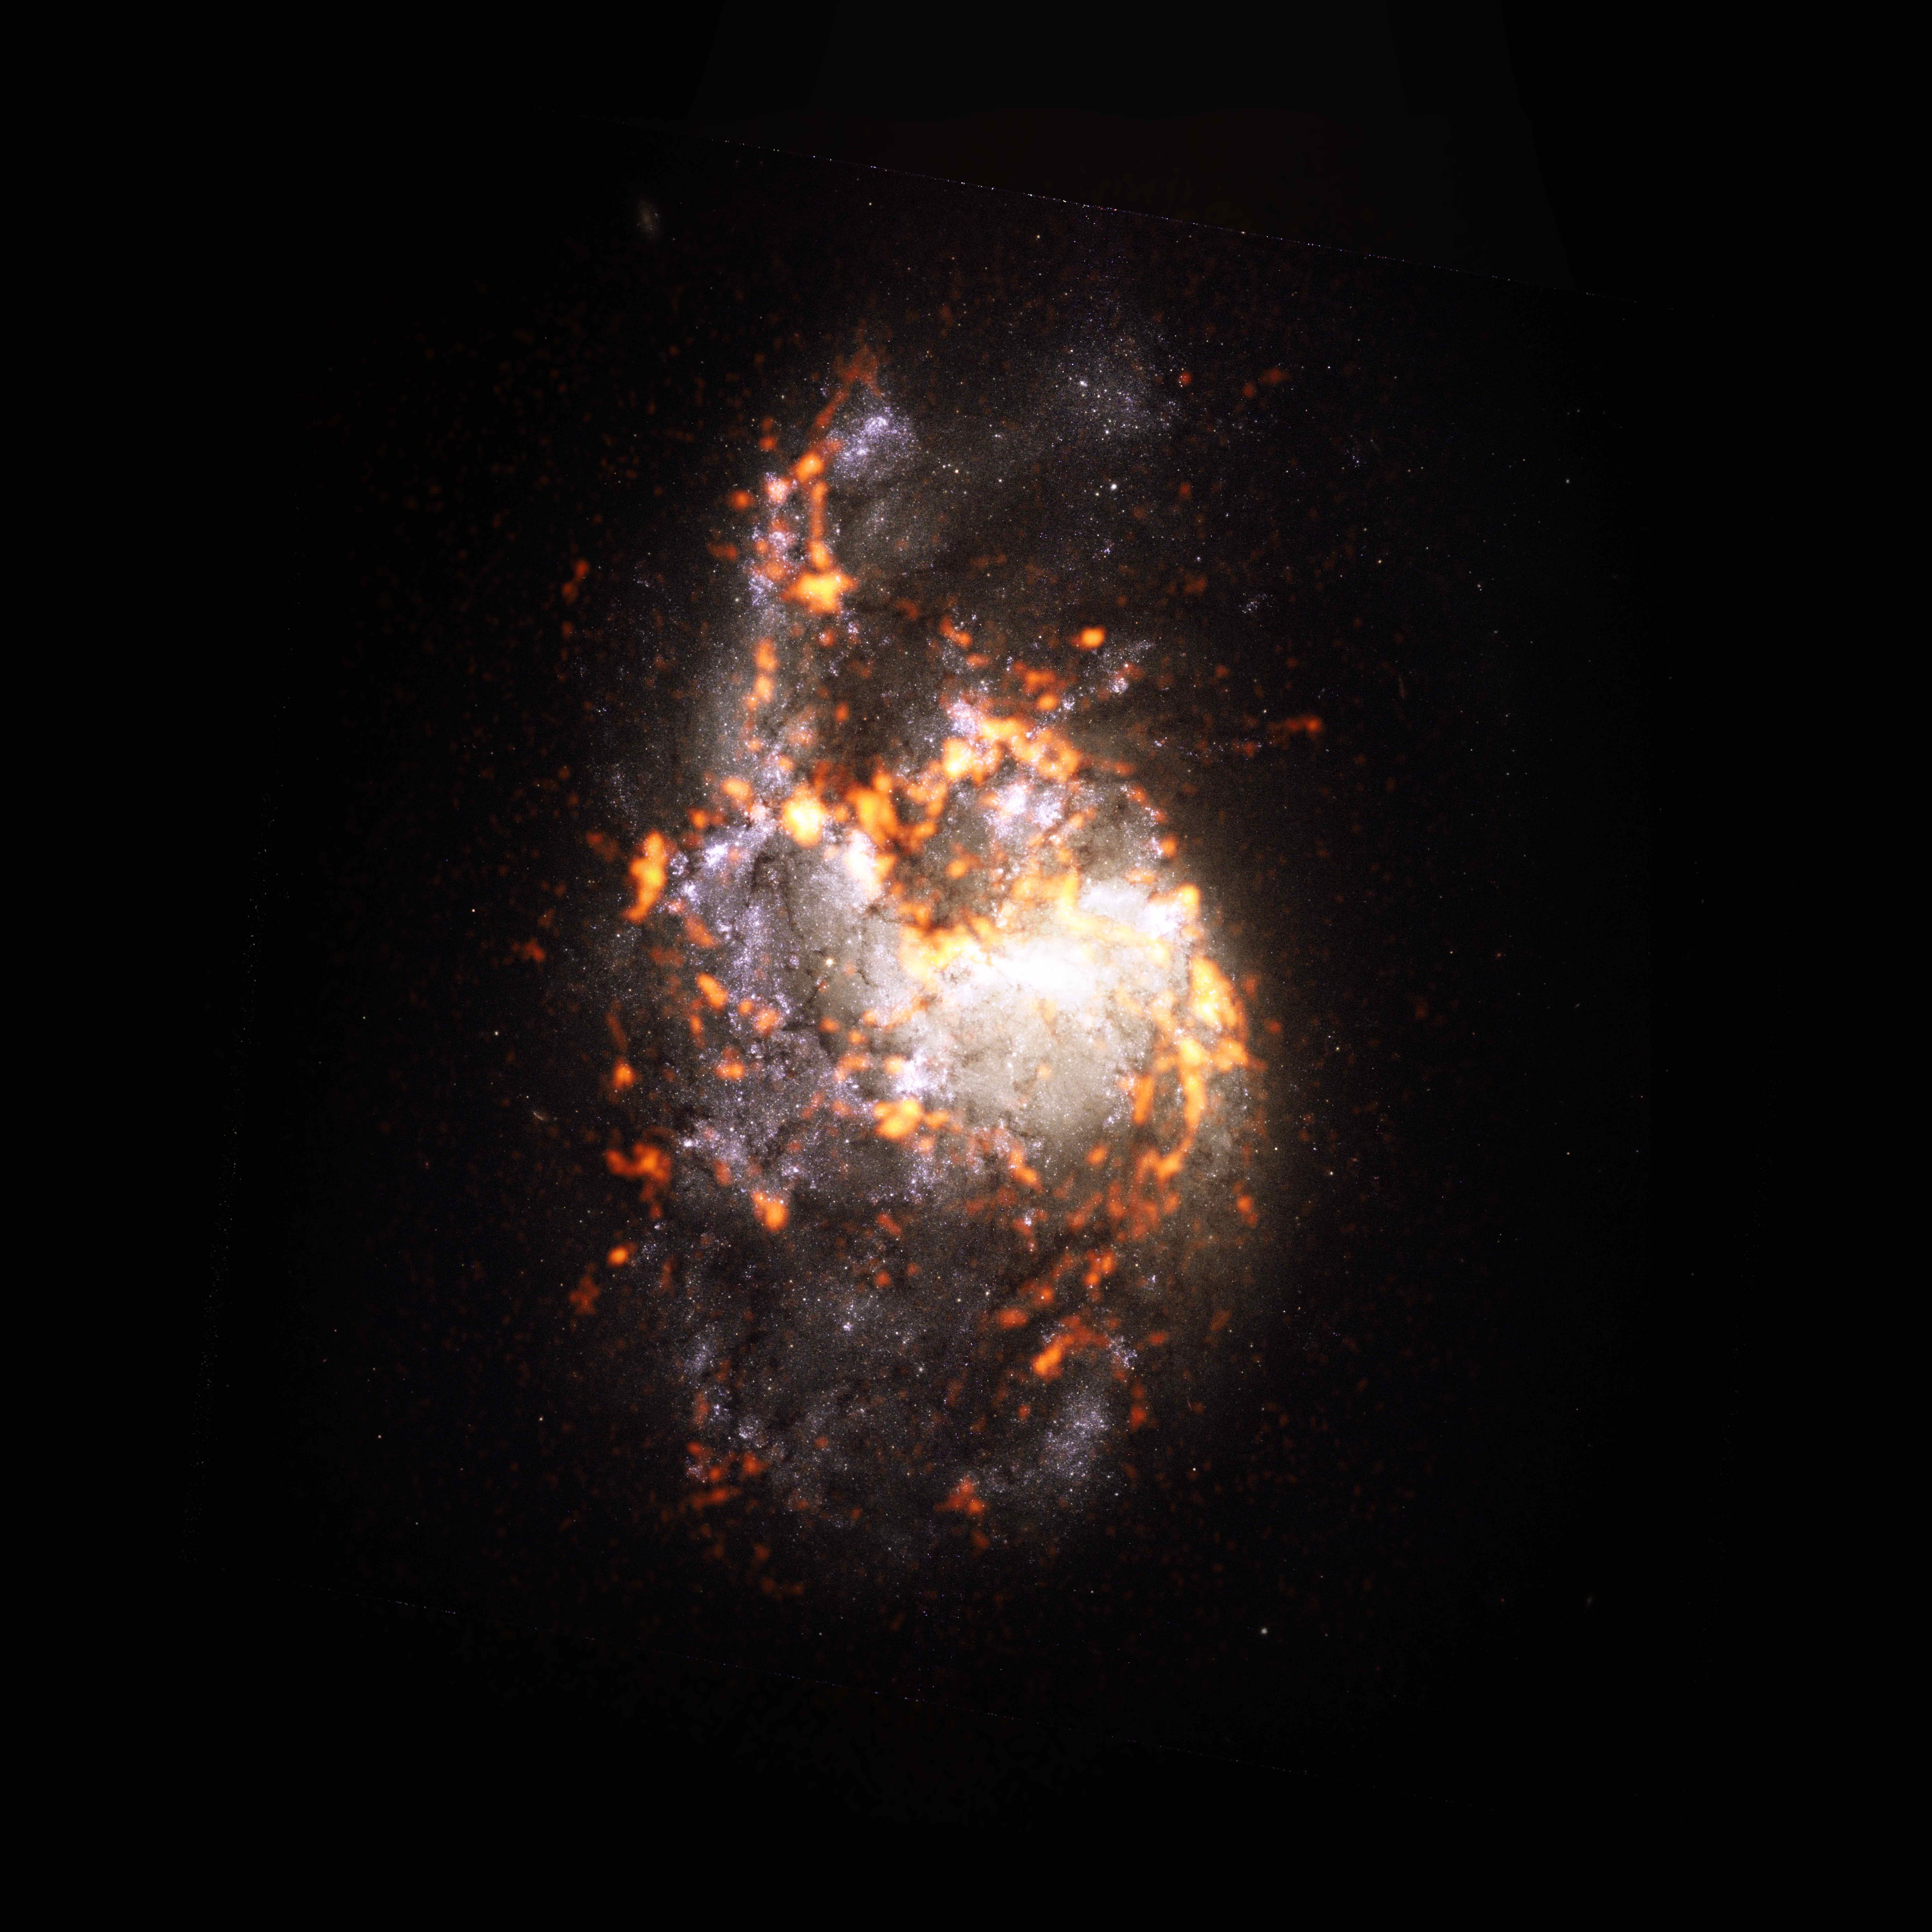 PHANGS-ALMA Survey: NGC1385